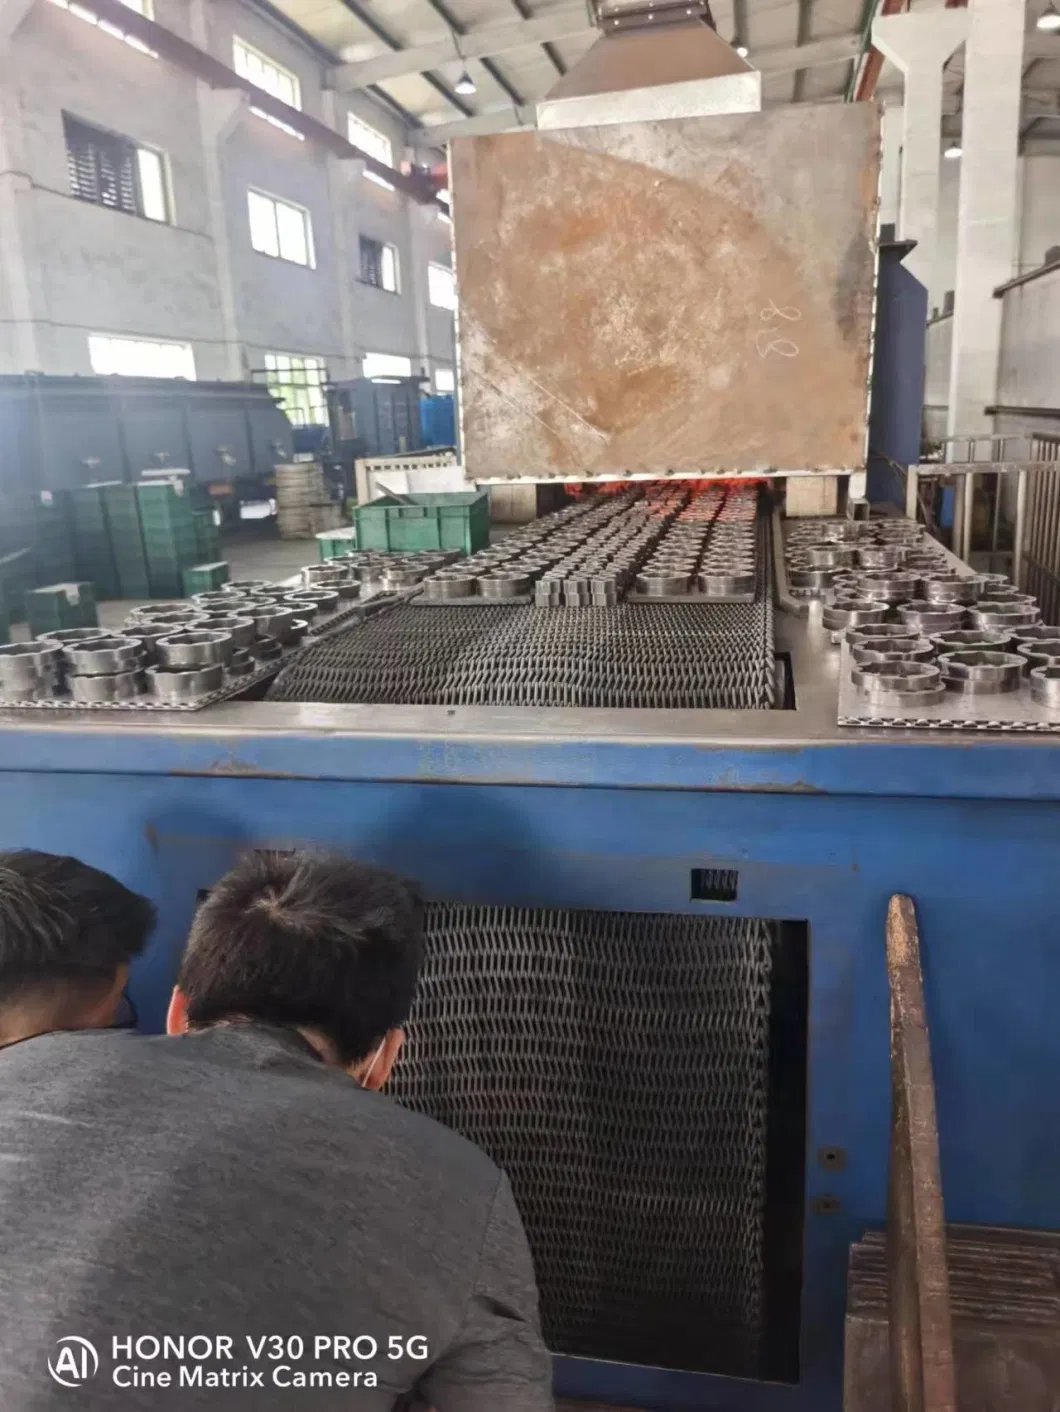 Heat Resistant Metal Stainless Steel Oven Conveyor Belt Braided Mesh Conveyor Belt Annealing